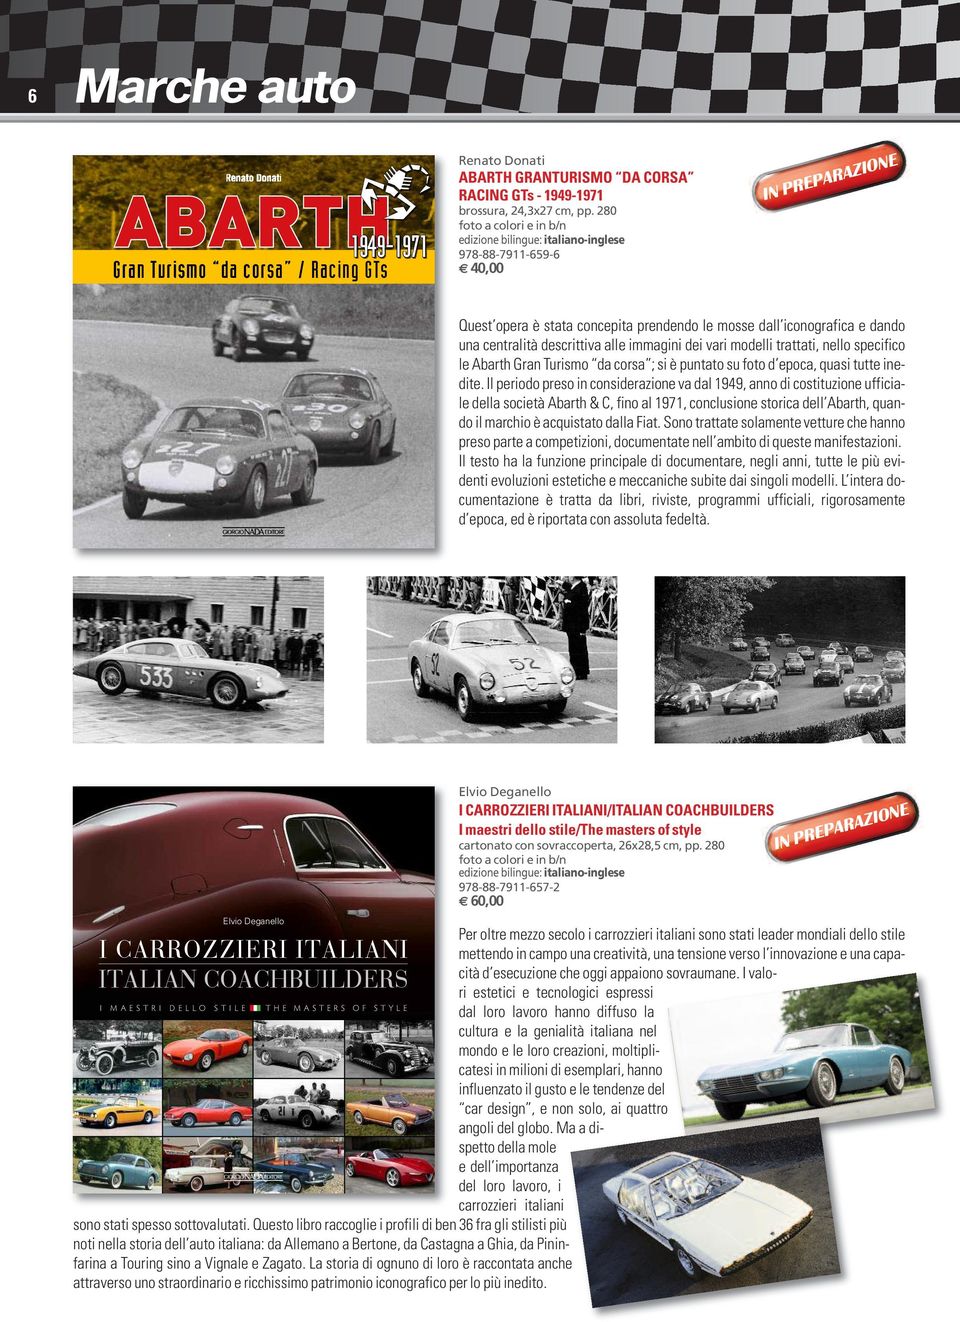 vari modelli trattati, nello specifico le Abarth Gran Turismo da corsa ; si è puntato su foto d epoca, quasi tutte inedite.